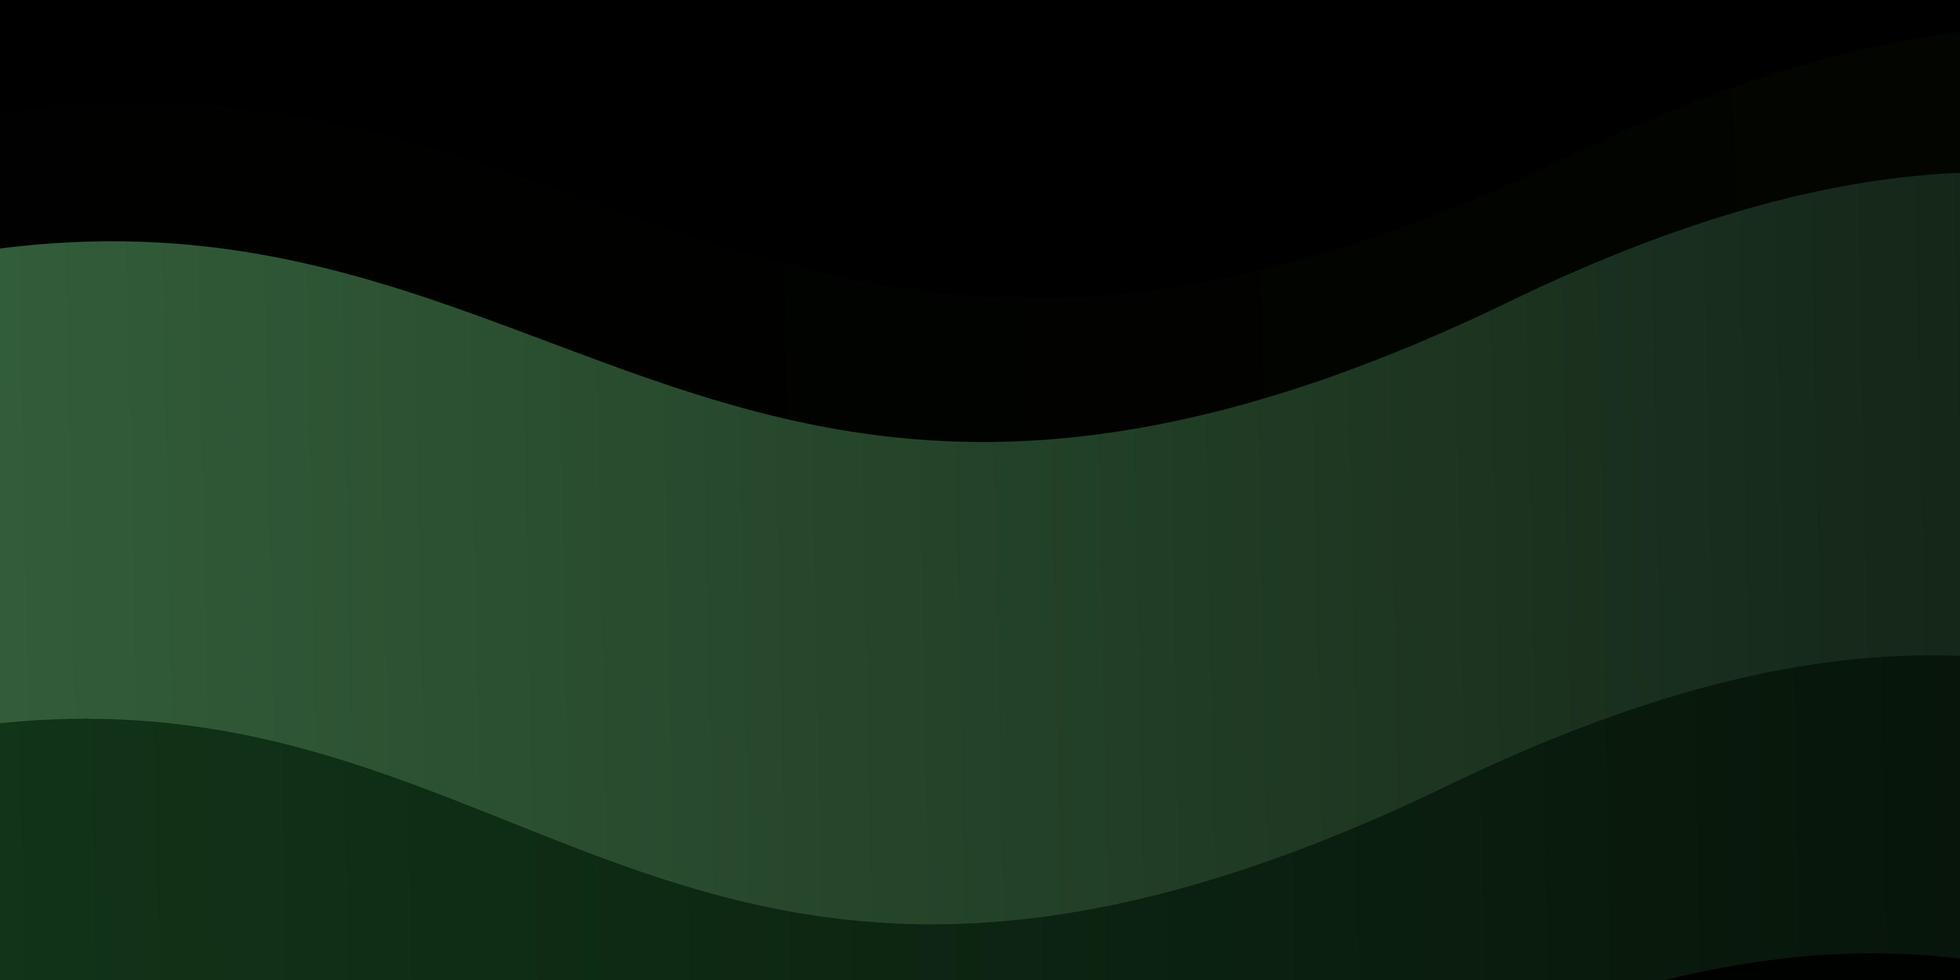 modelo de vetor verde escuro com linhas irônicas.